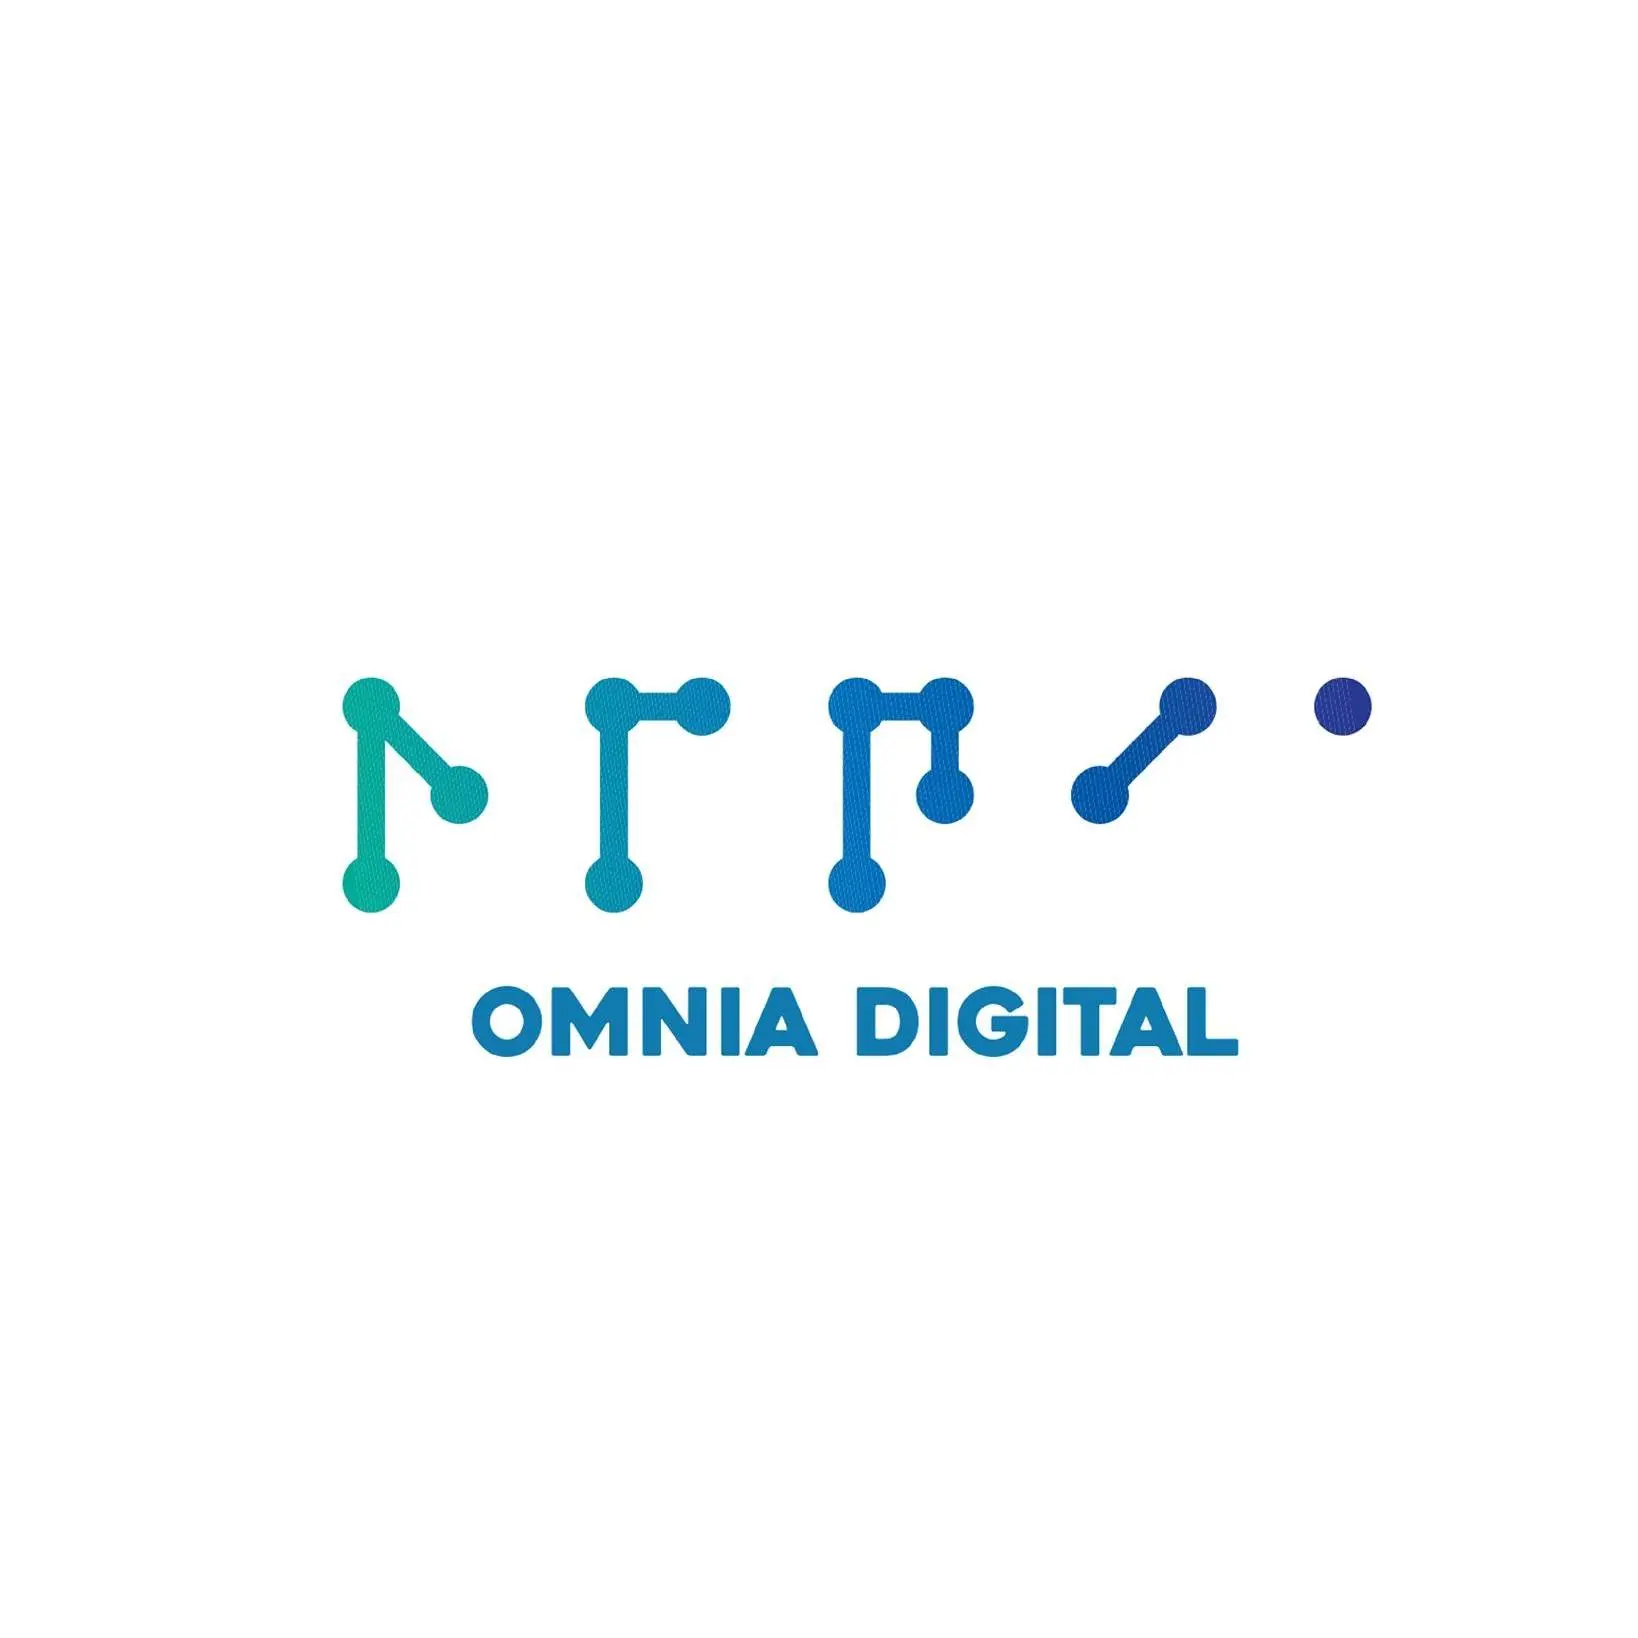 Omnia Digital